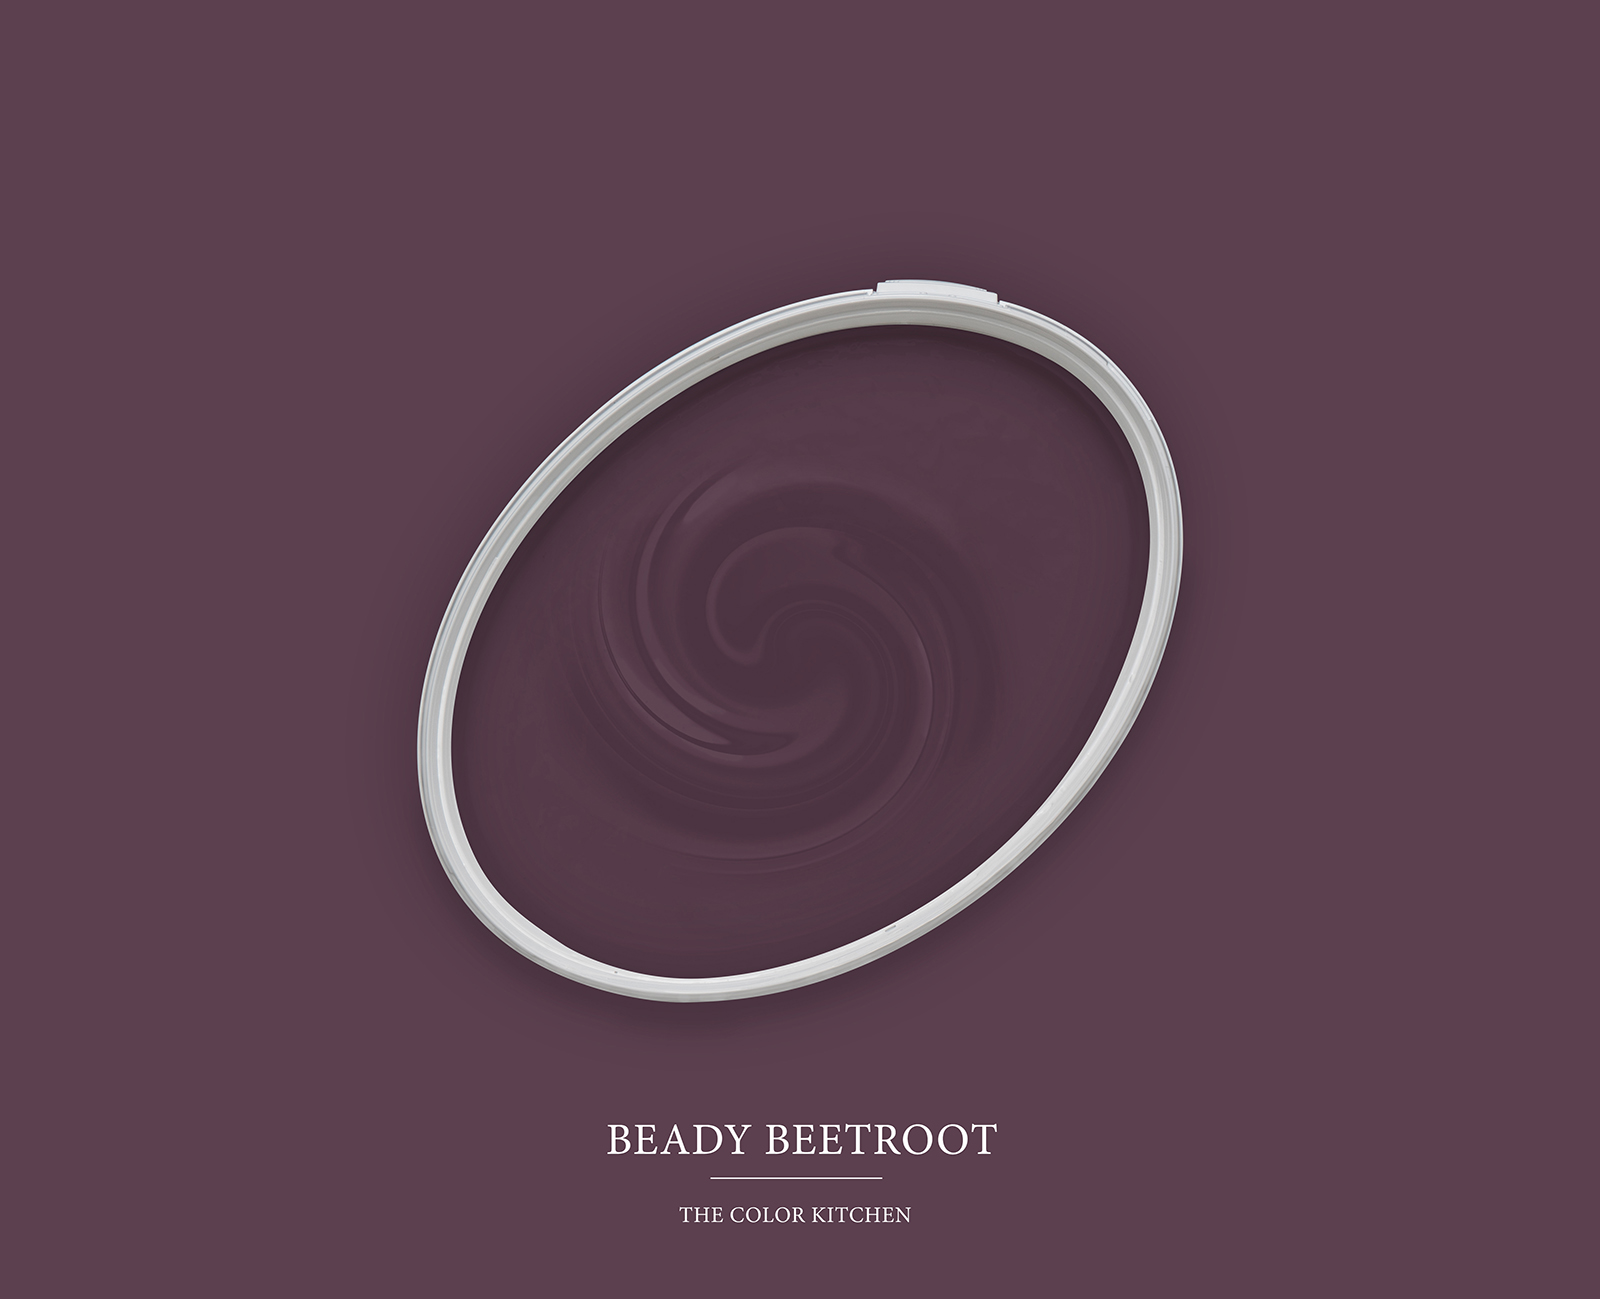         Wandfarbe TCK2007 »Beady Beetroot« in einem Zwischenspiel von Violett und Rot – 2,5 Liter
    